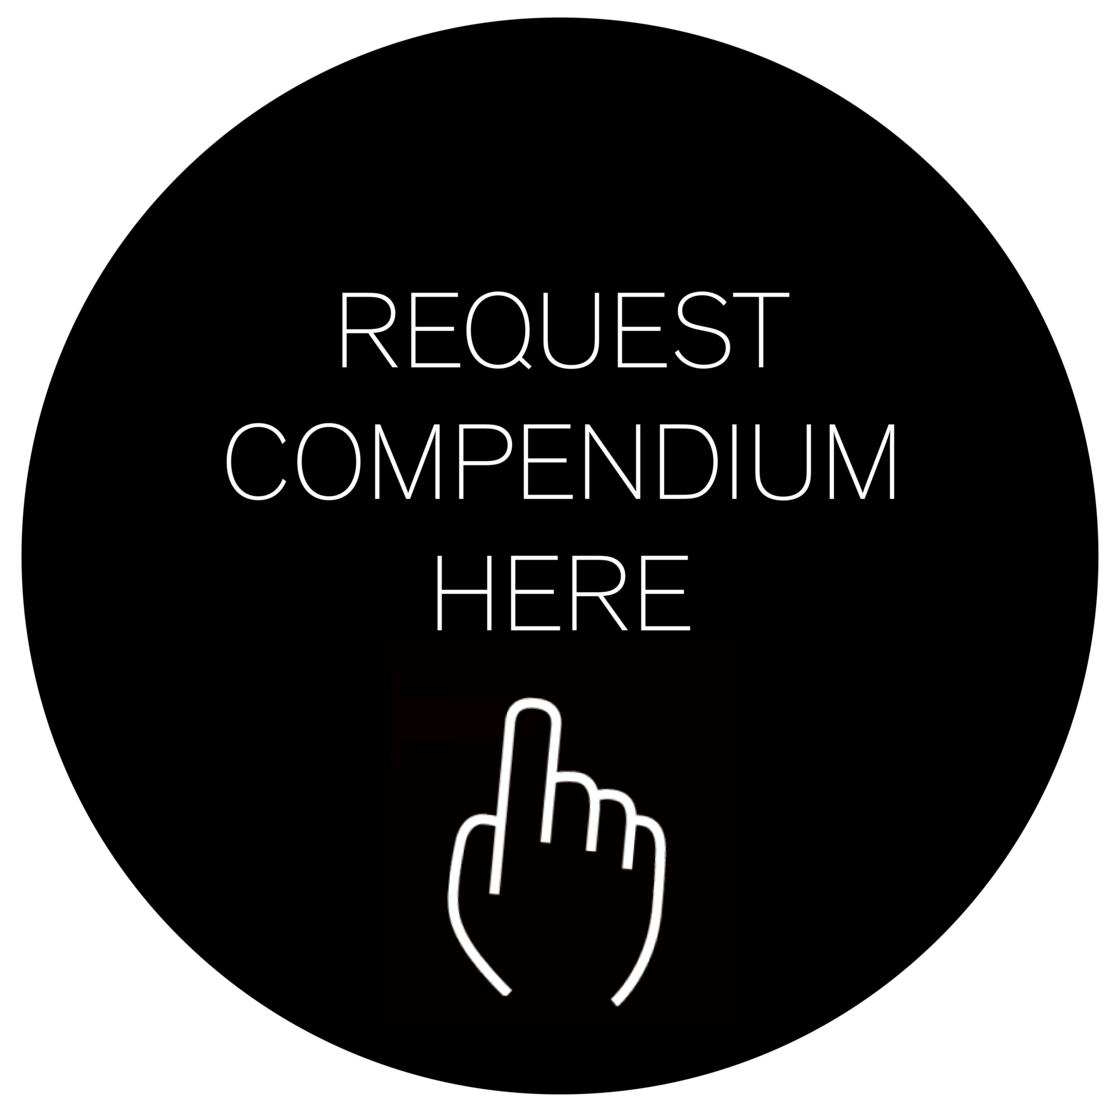 request compendium of our HFDS 